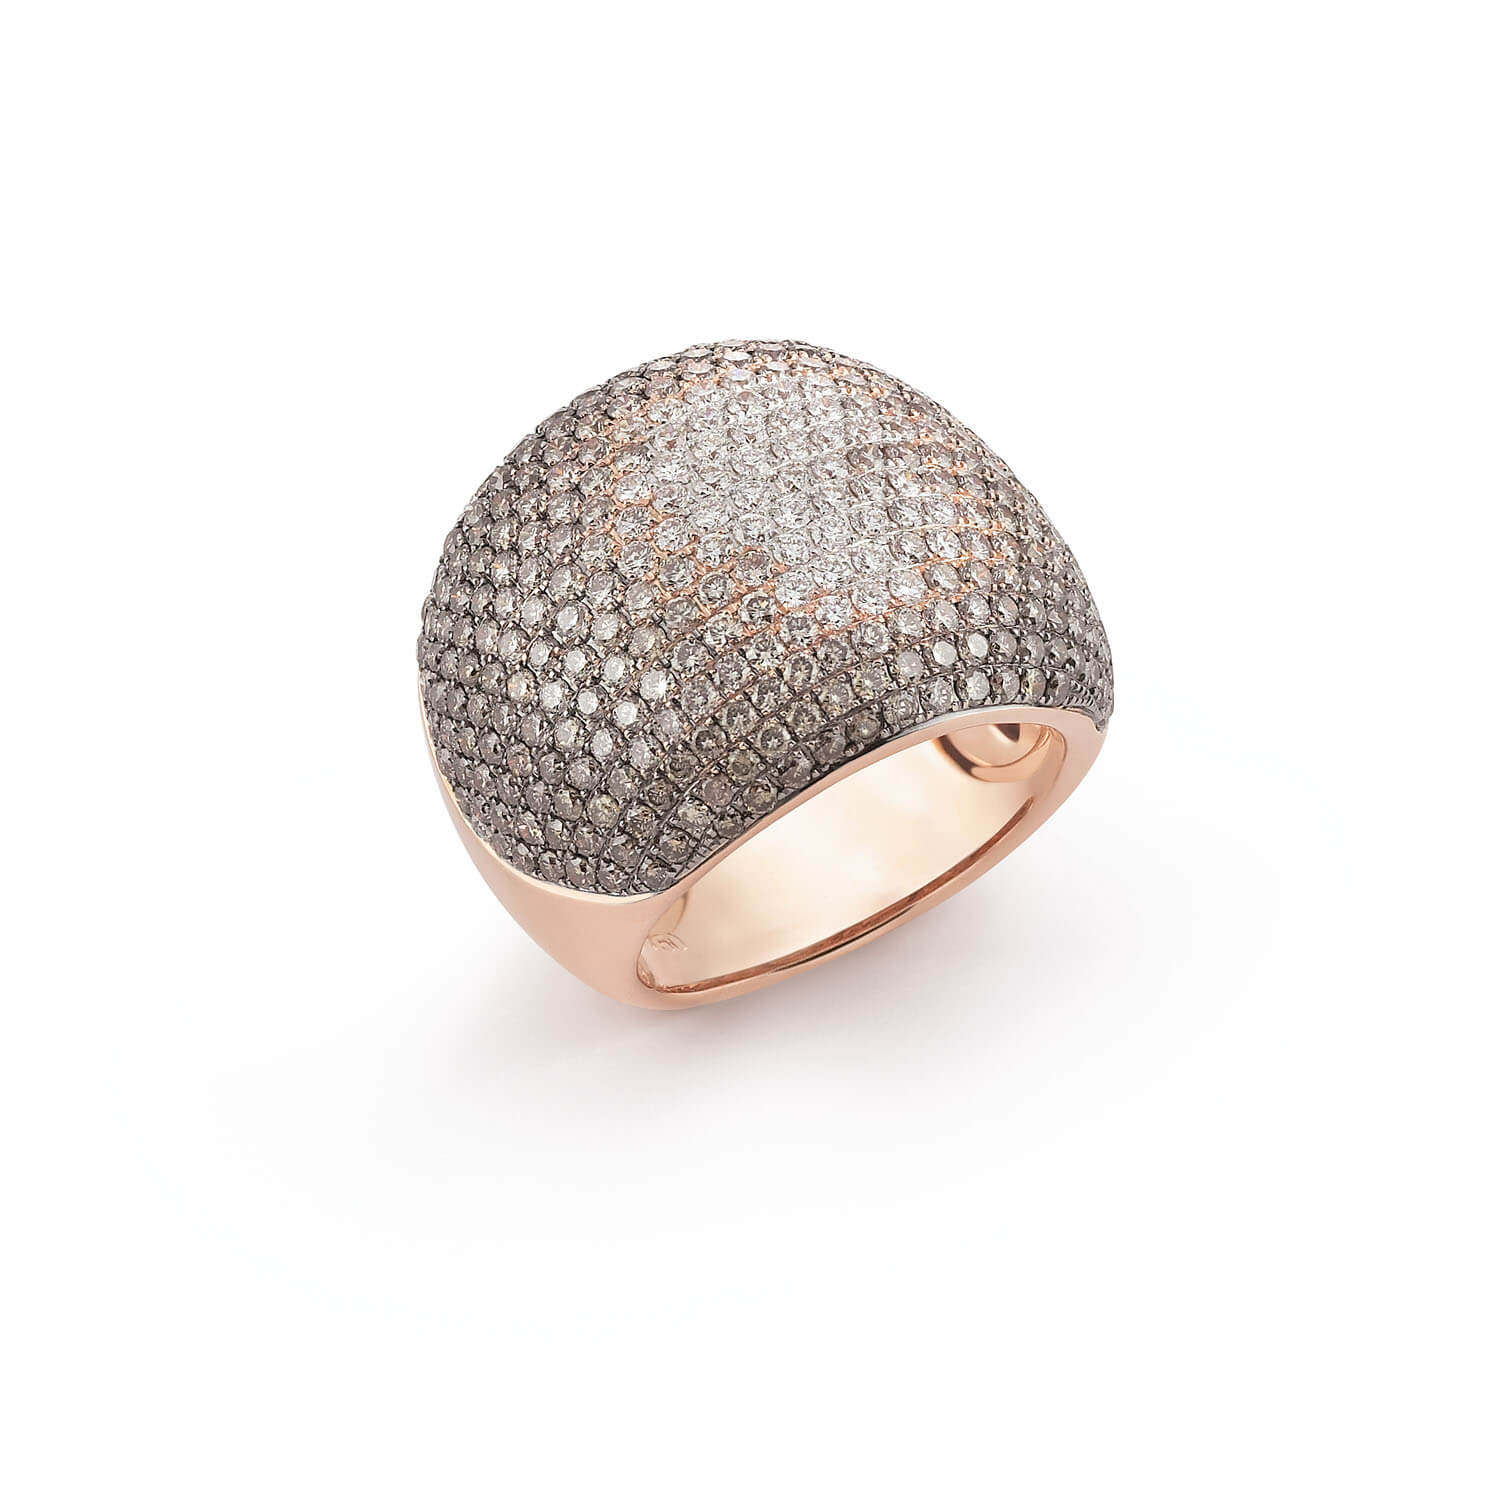 Al Coro Dolce Vita Ring White and Brown Diamonds 18k Gold - Orsini Jewellers